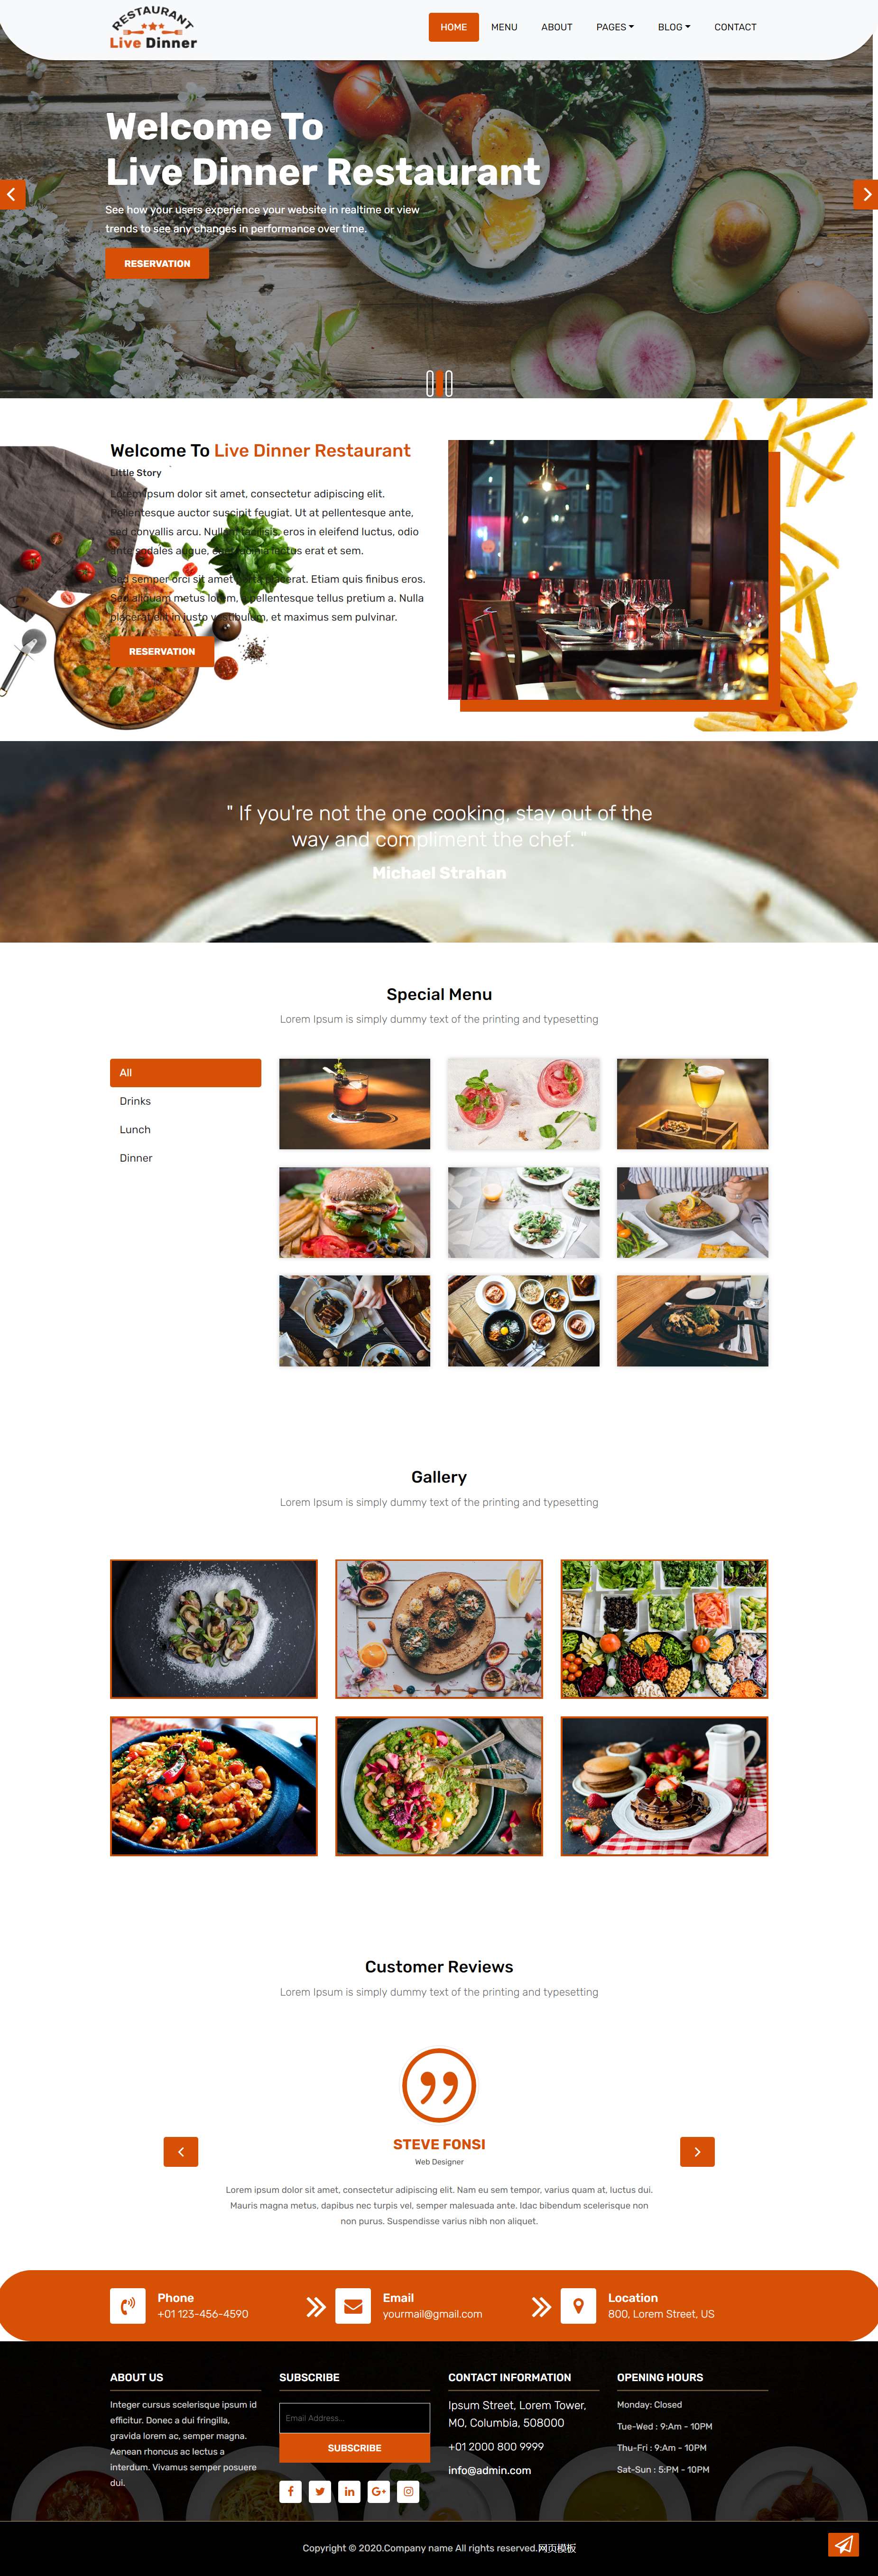 红色简洁形式pc+wap美食餐厅菜单网页模板代码